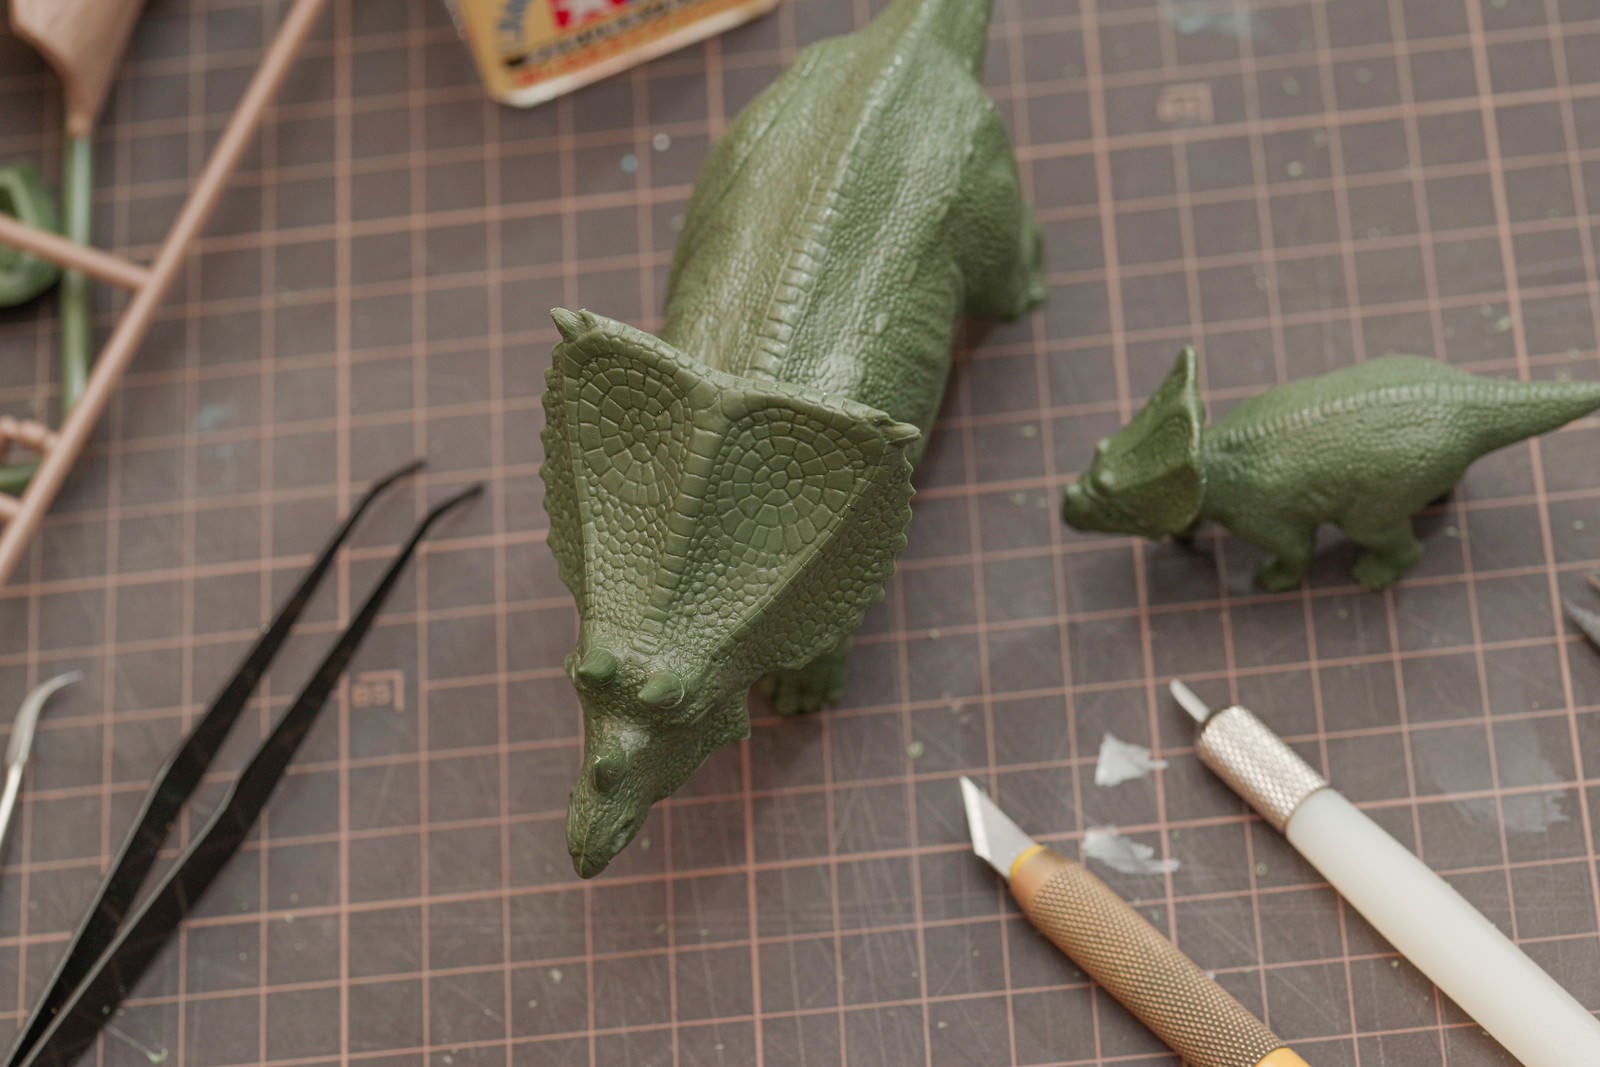 「恐竜のプラモデルと工具類」の写真